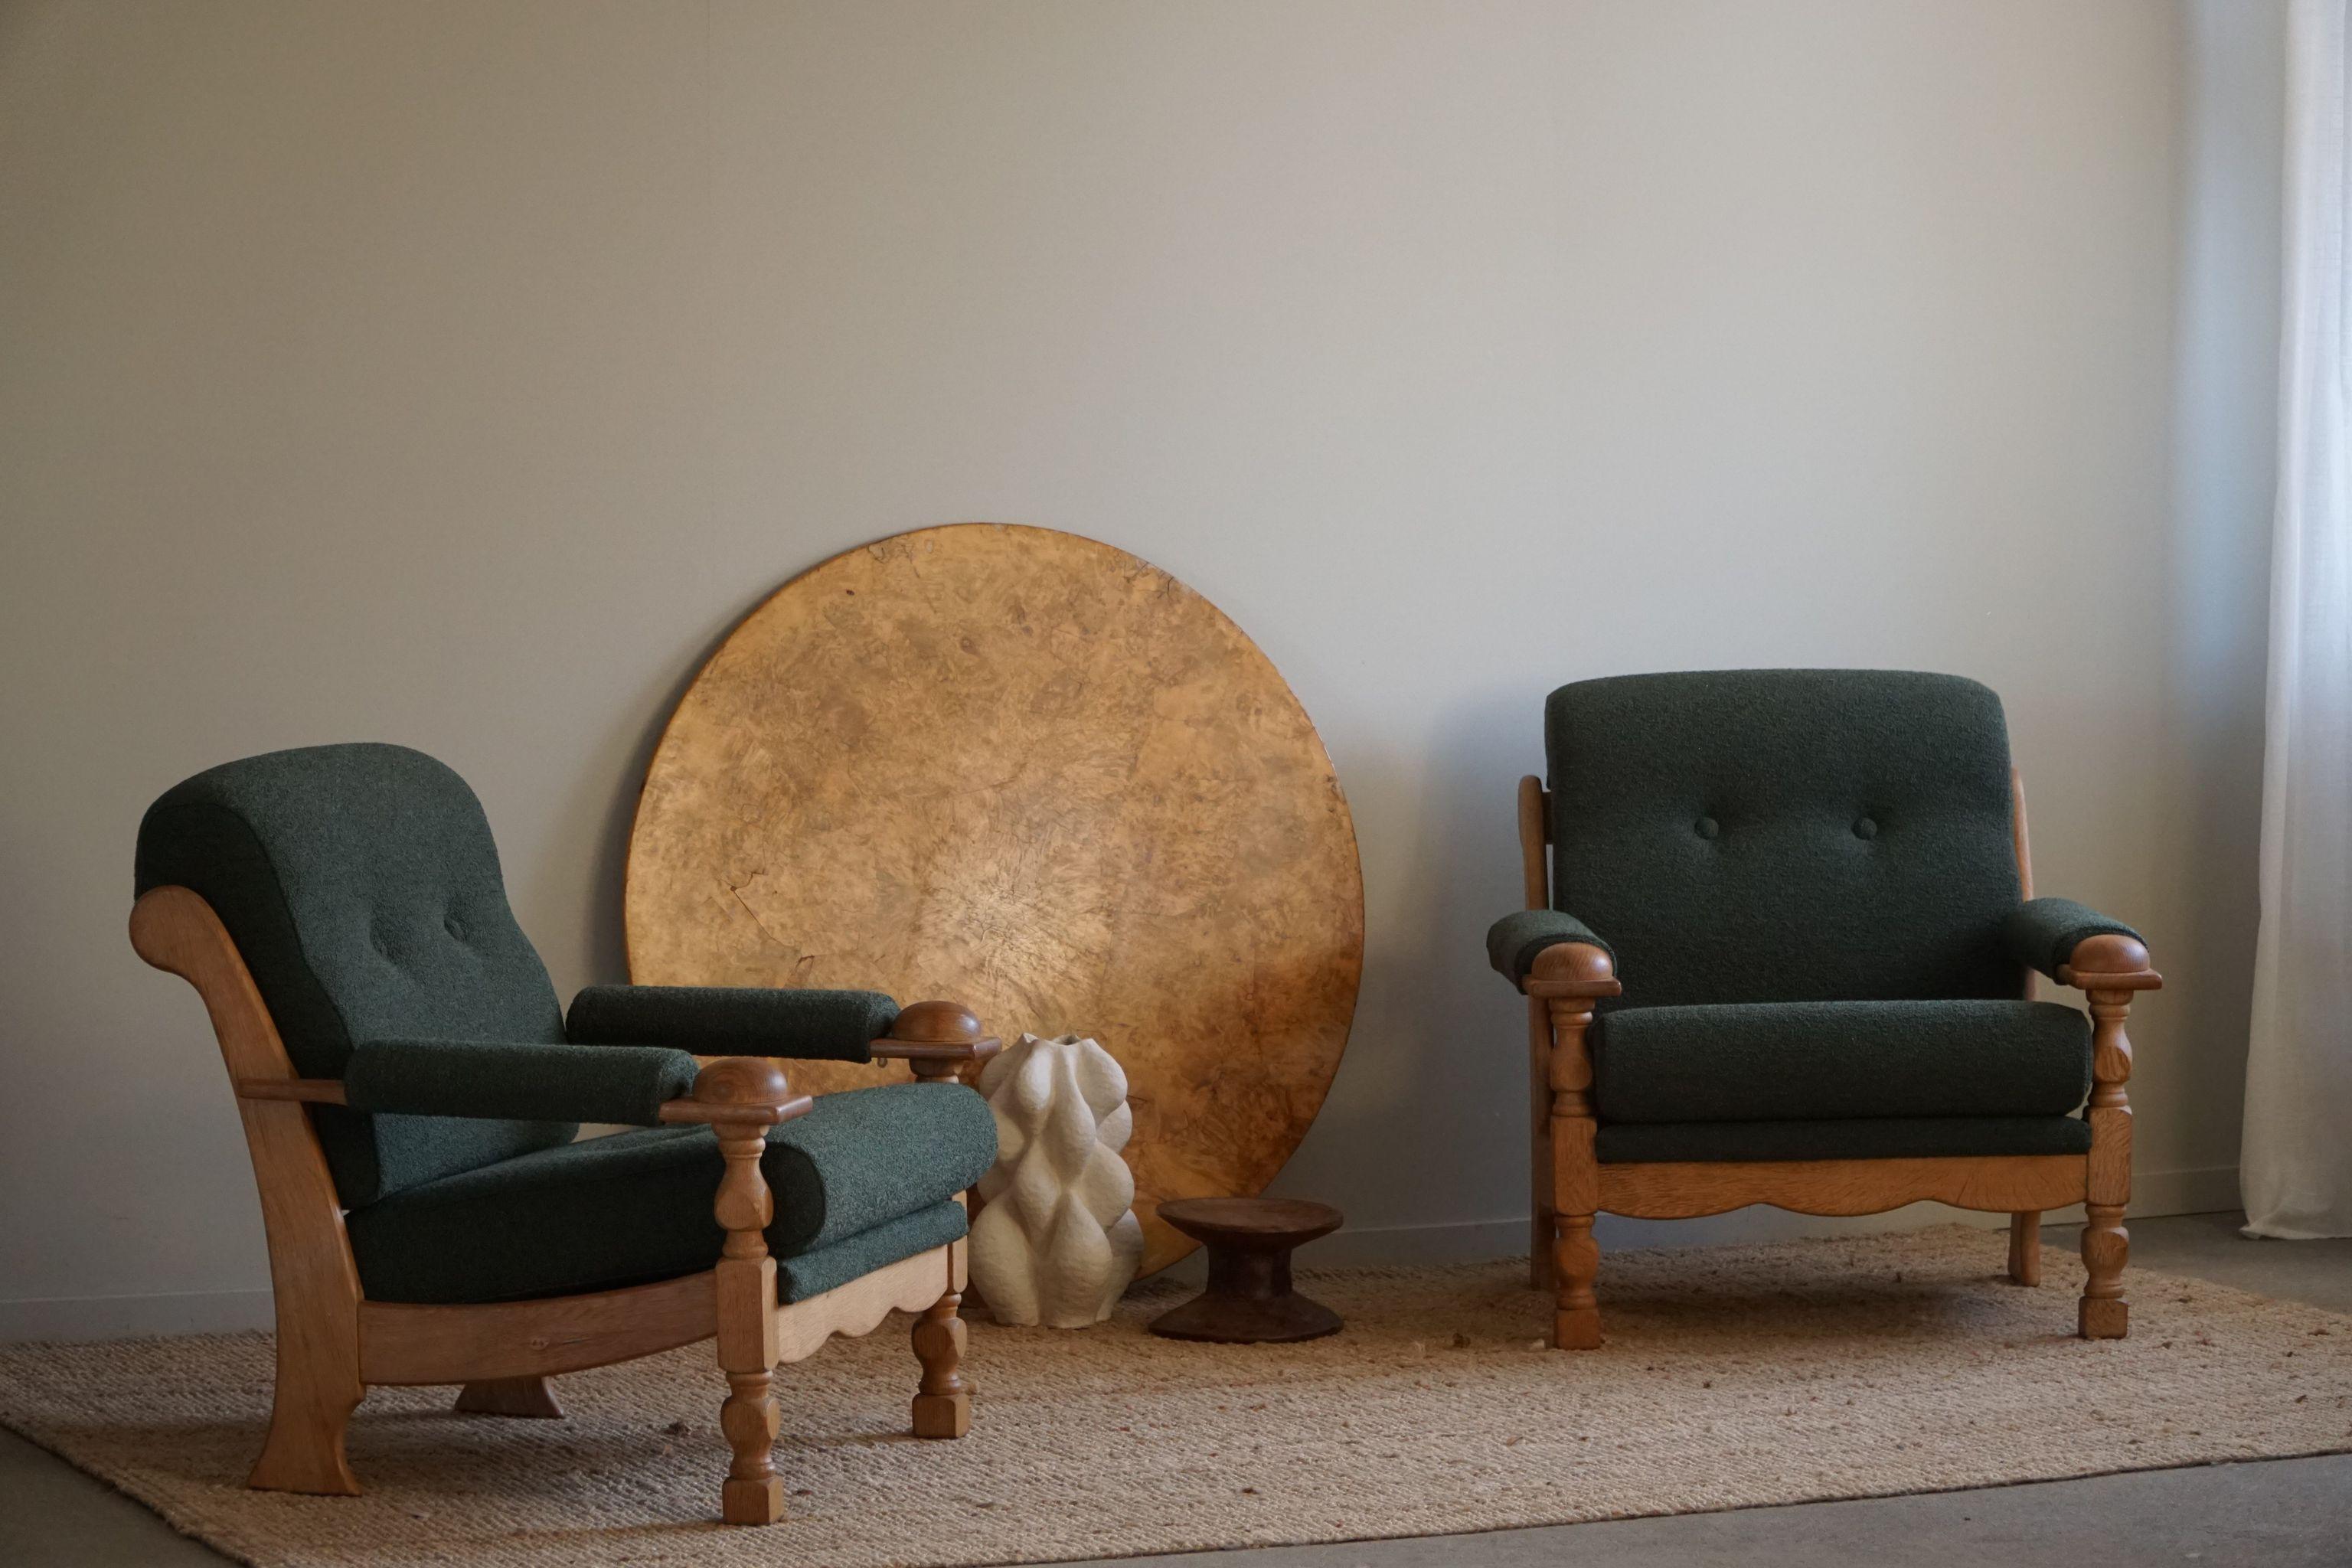 Nous vous présentons une superbe paire de chaises longues modernes danoises qui résument l'essence du design du milieu du siècle. Attribuées au célèbre designer danois Henning Kjærnulf et méticuleusement fabriquées dans les années 1960, ces chaises